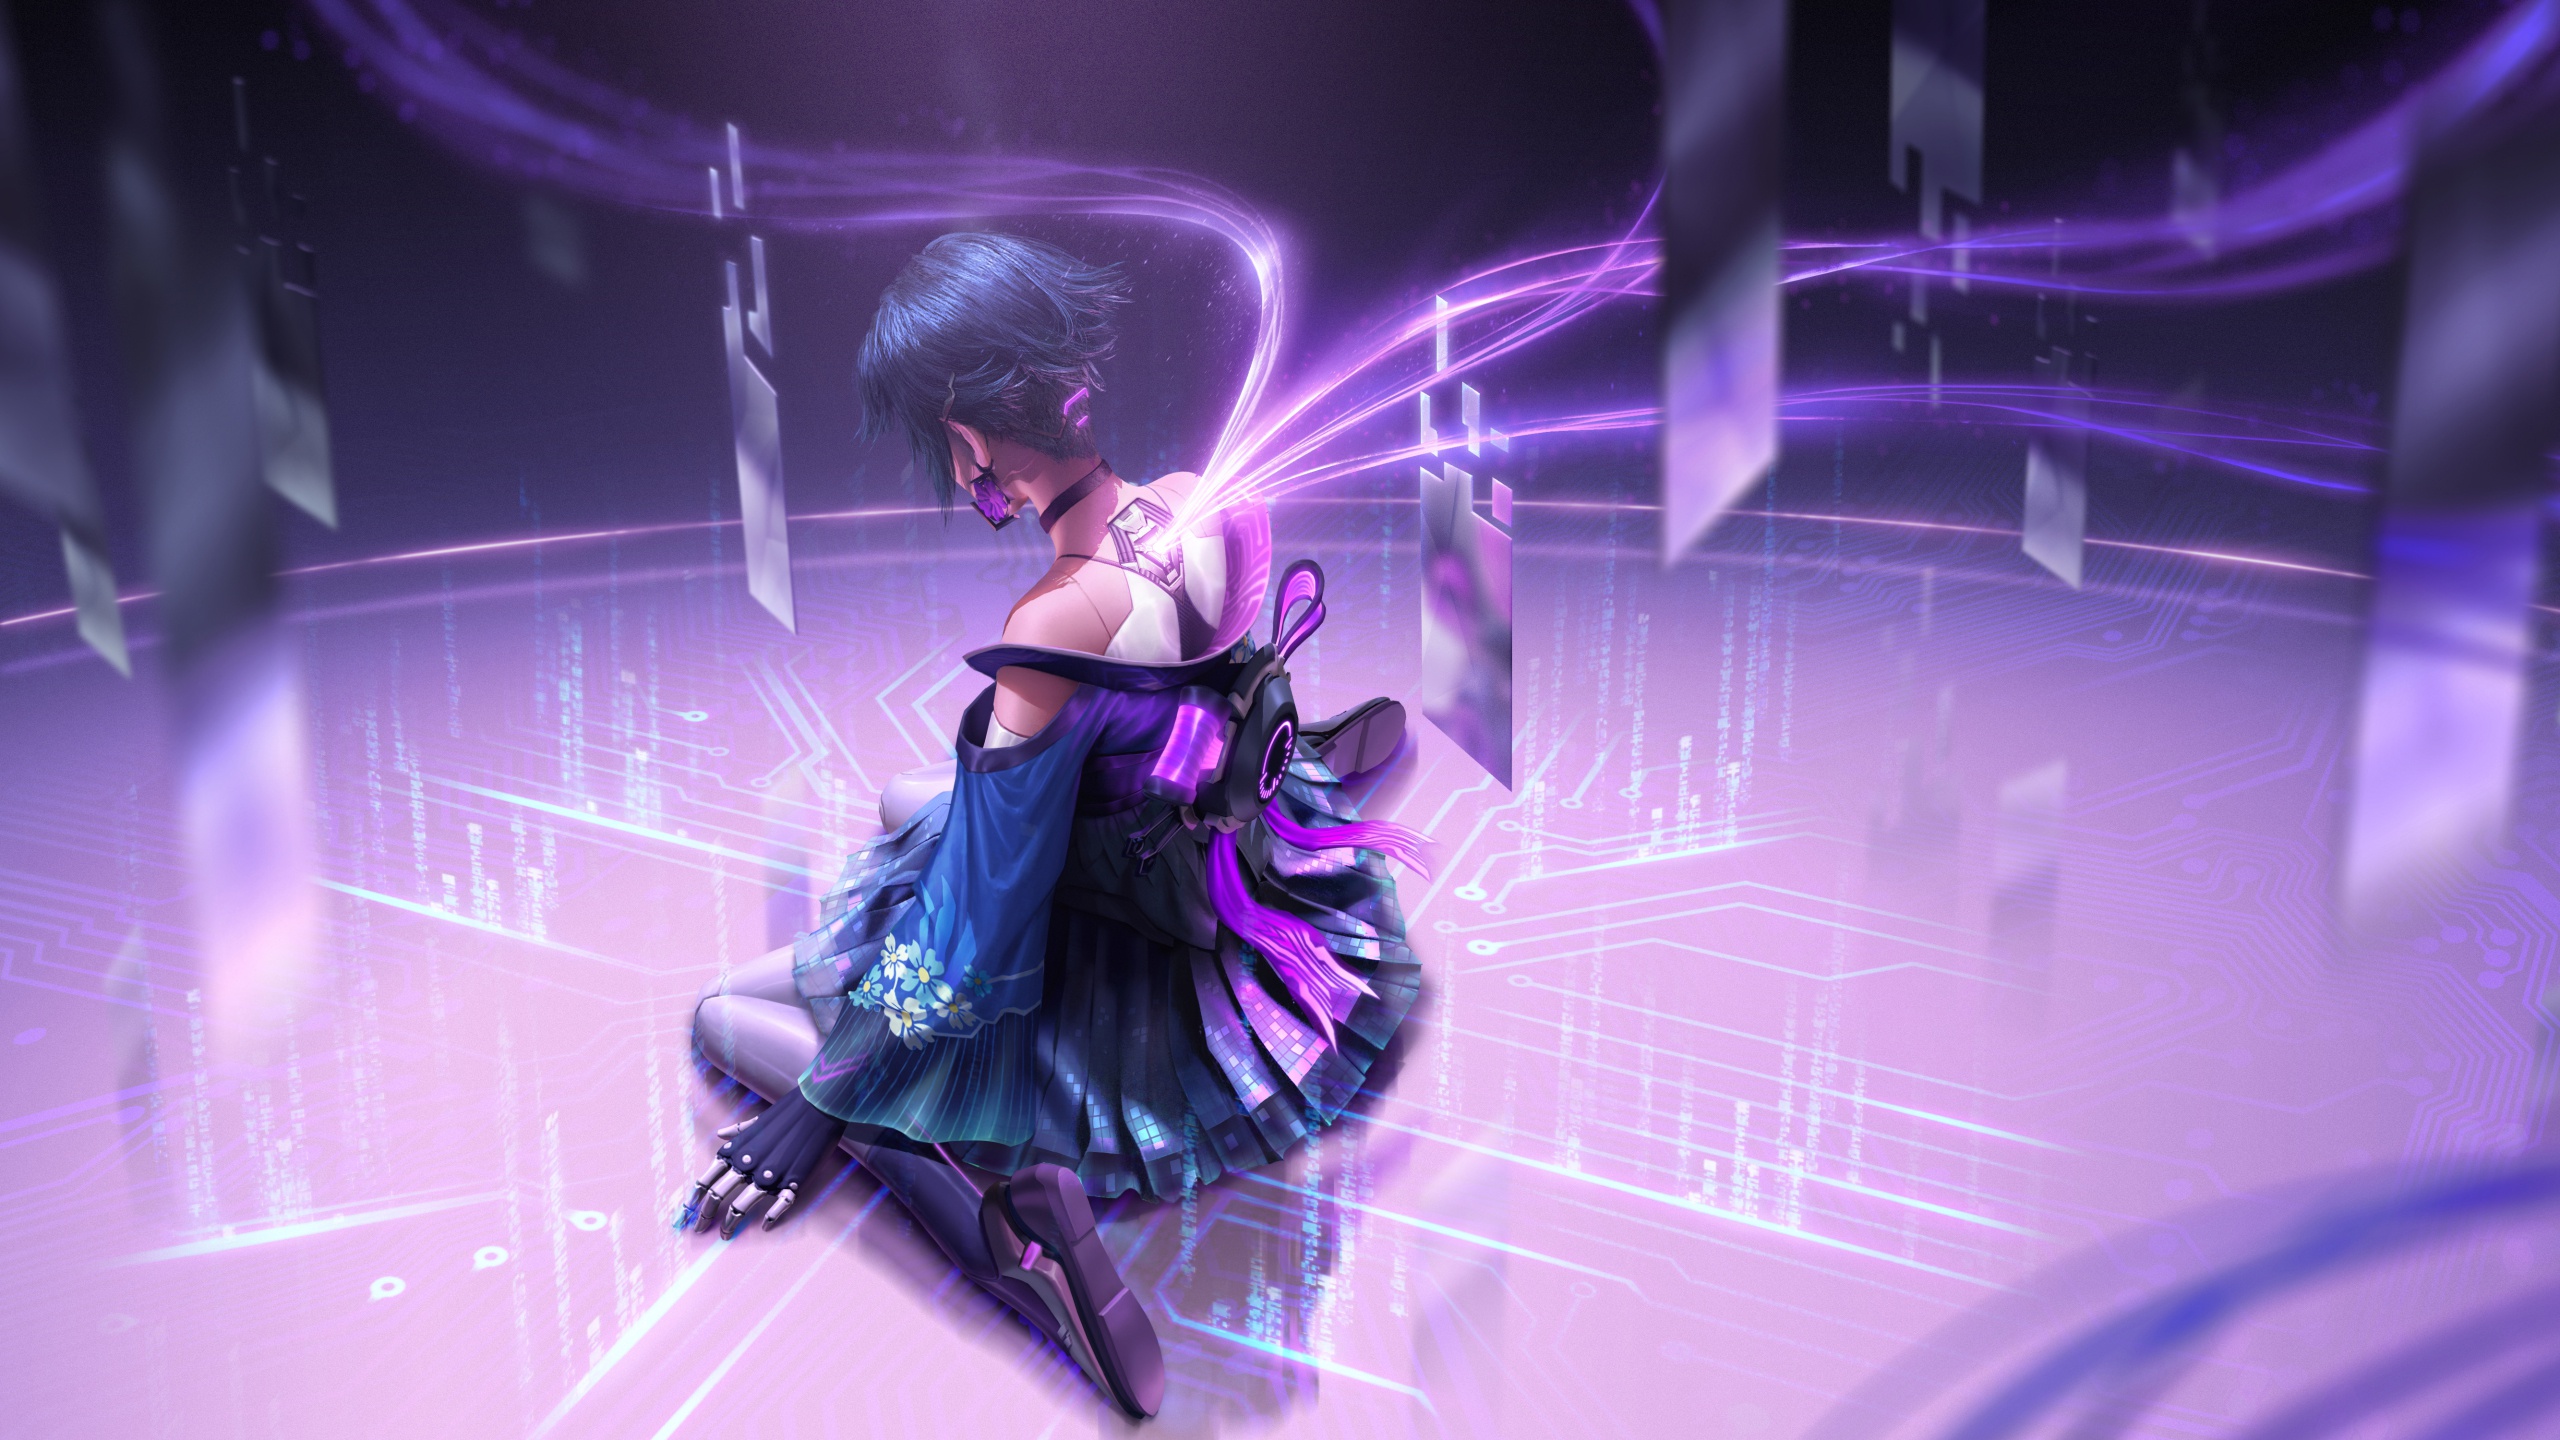 General 2560x1440 Cyber Hunter artwork cyberpunk kneeling purple RX (artist)